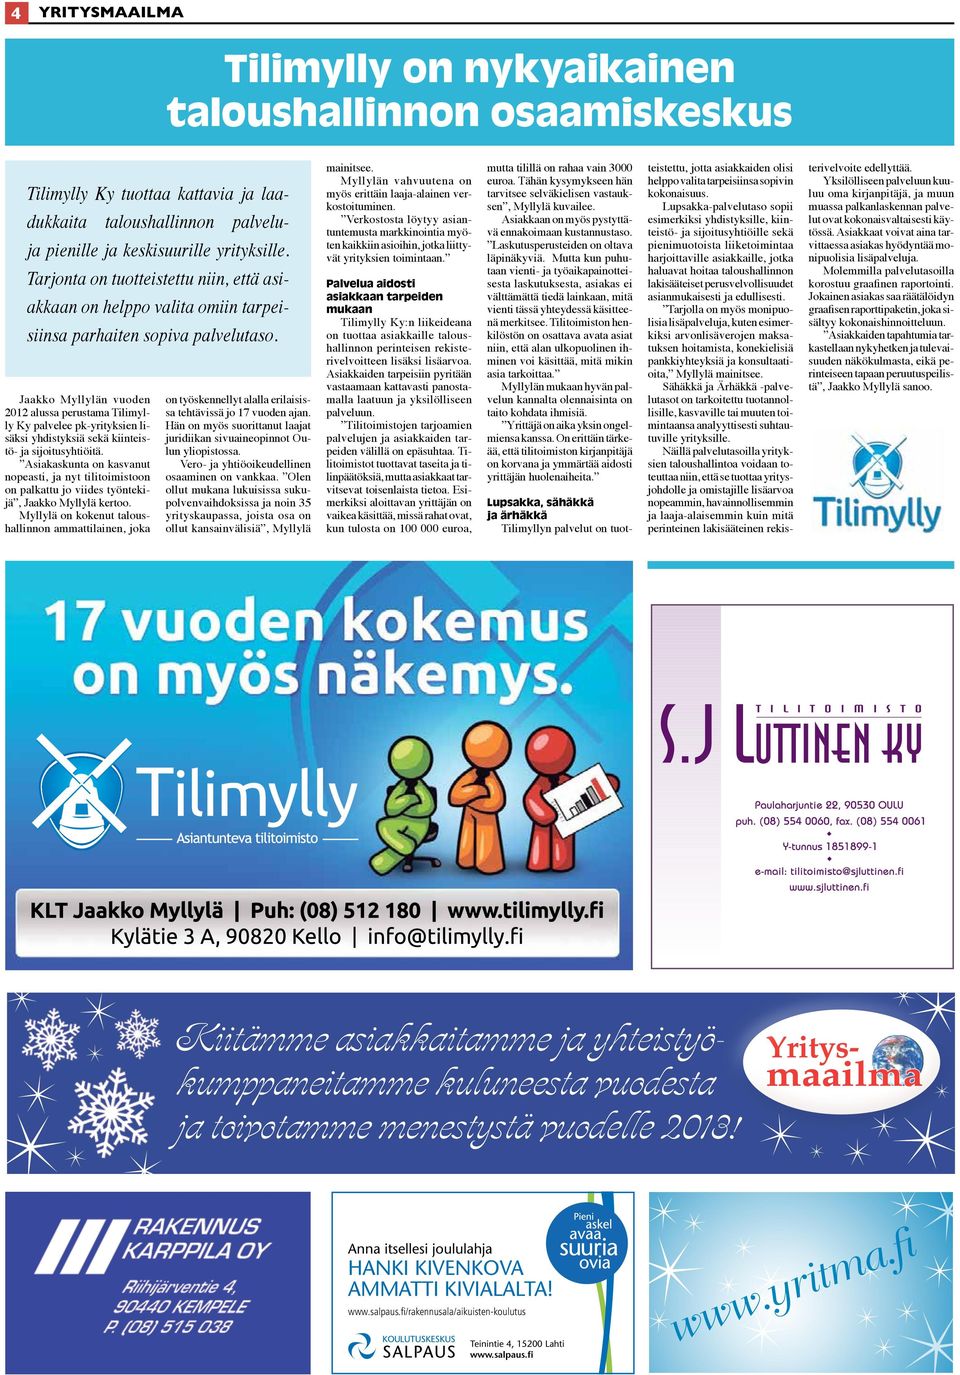 Jaakko Myllylän vuoden 2012 alussa perustama Tilimylly Ky palvelee pk-yrityksien lisäksi yhdistyksiä sekä kiinteistö- ja sijoitusyhtiöitä.